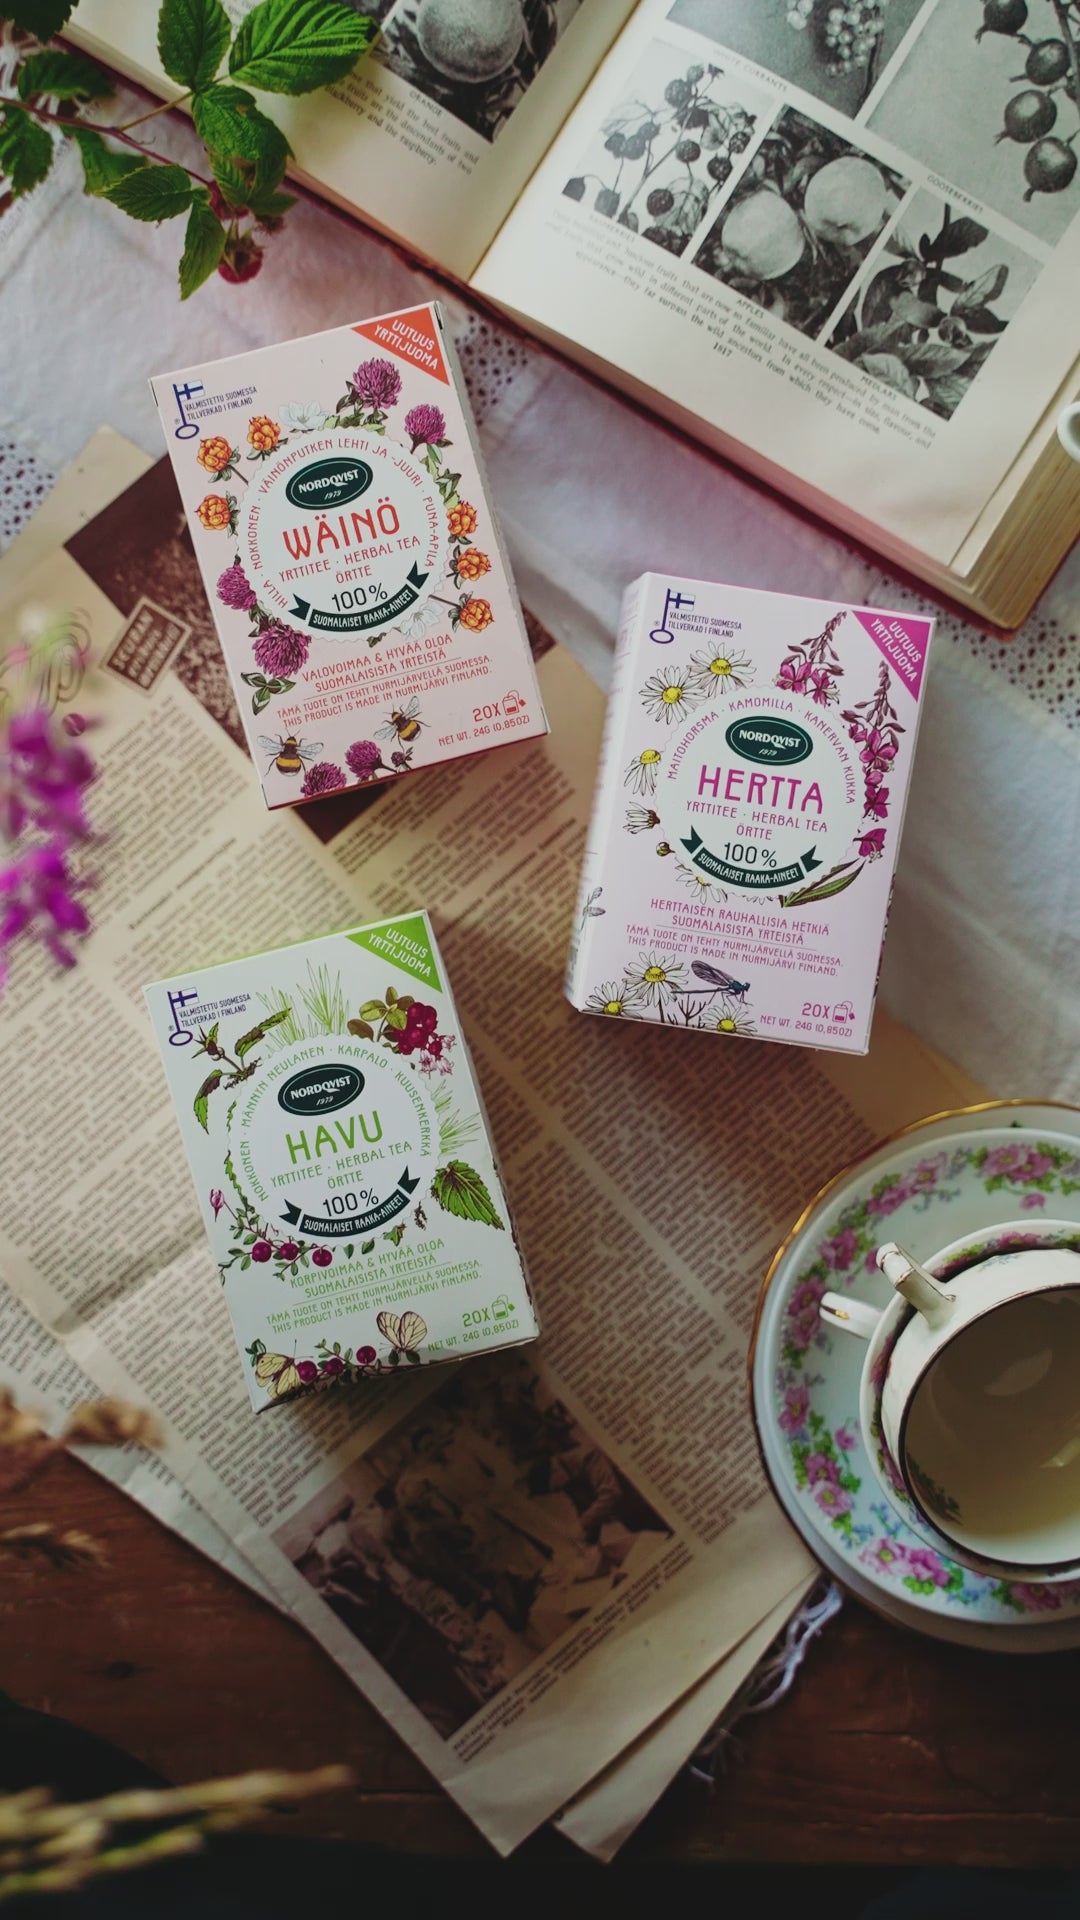 HERTTA Finnish herbal tea NEW